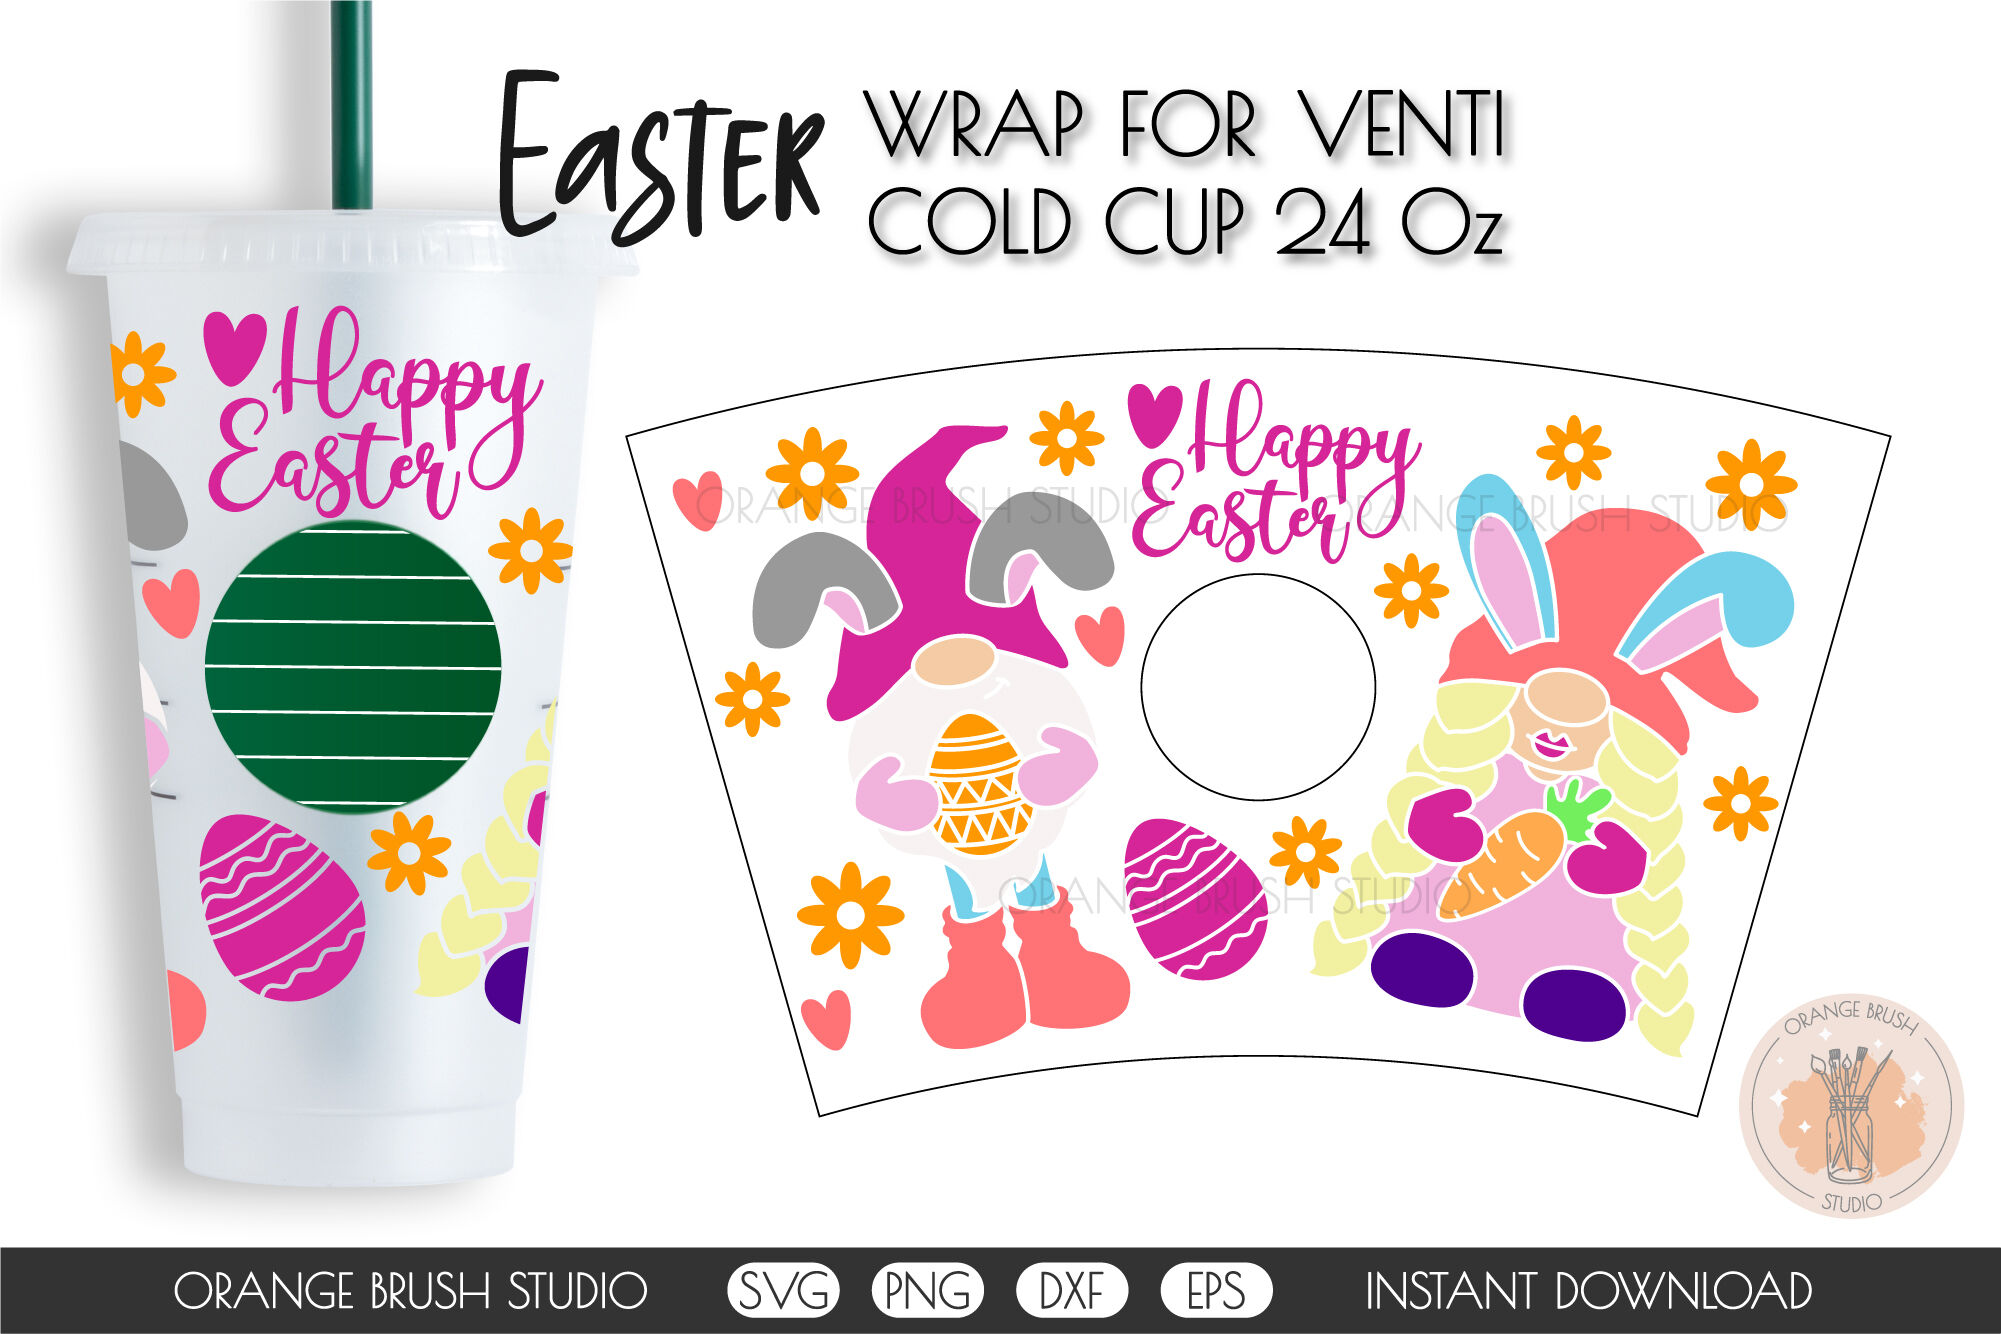 Bundle 6 Easter 24oz Cold Cup Tumbler Wrap